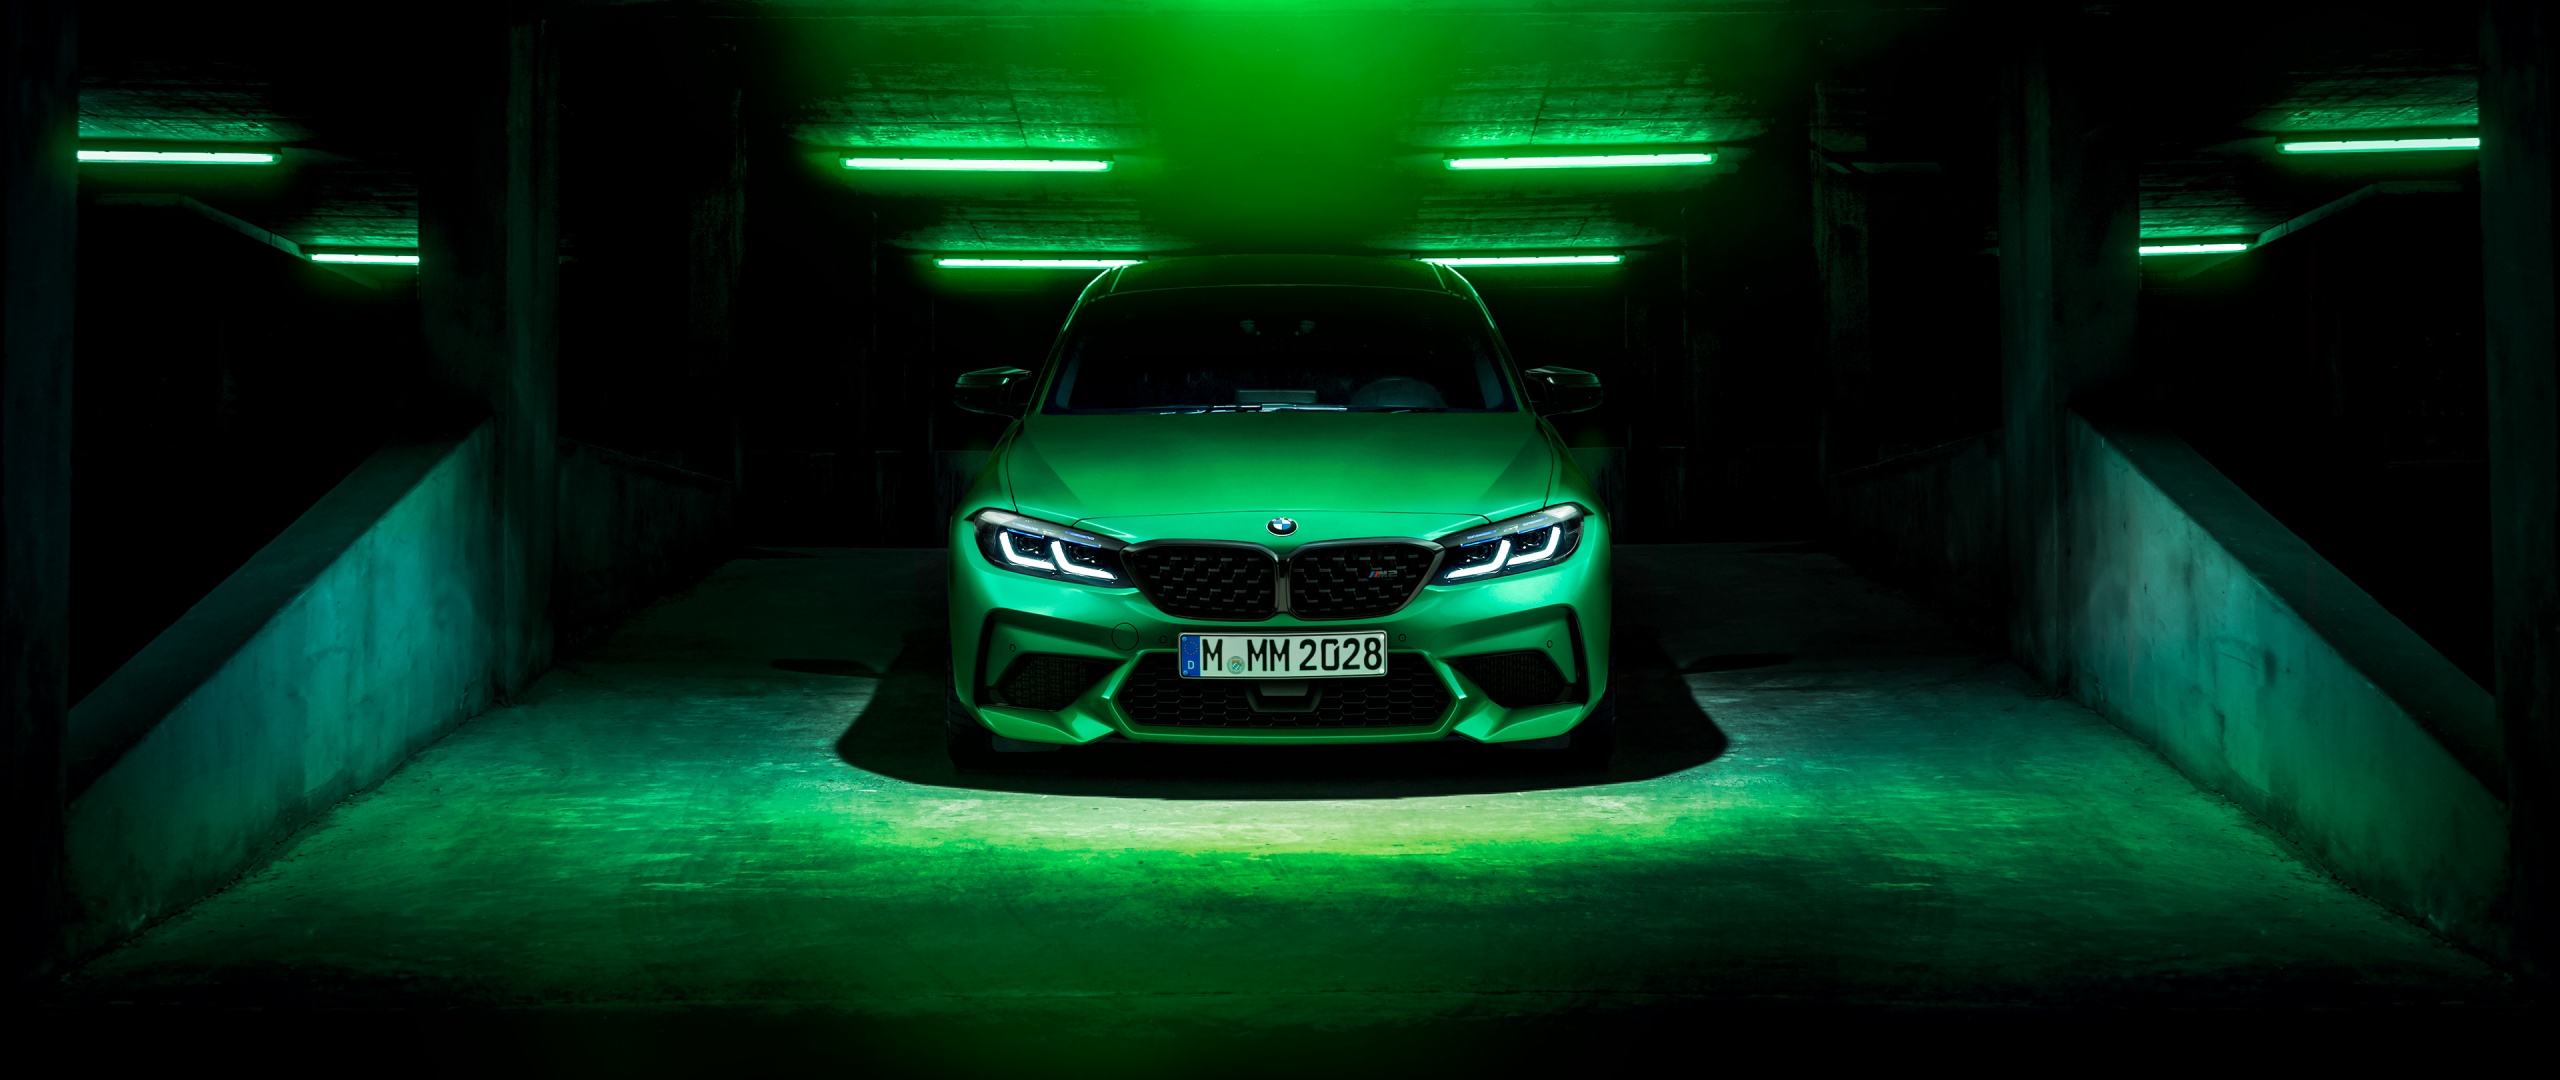 Thưởng thức bức ảnh ô tô BMW M2 Wallpaper 4K chất lượng cao, bạn sẽ ngỡ ngàng trước vẻ đẹp năng động và sang trọng của chiếc xe huyền thoại này. Hãy xem và cảm nhận những đường nét mềm mại, sự tinh tế từng chi tiết và sự uyển chuyển của BMW M2 Wallpaper 4K.